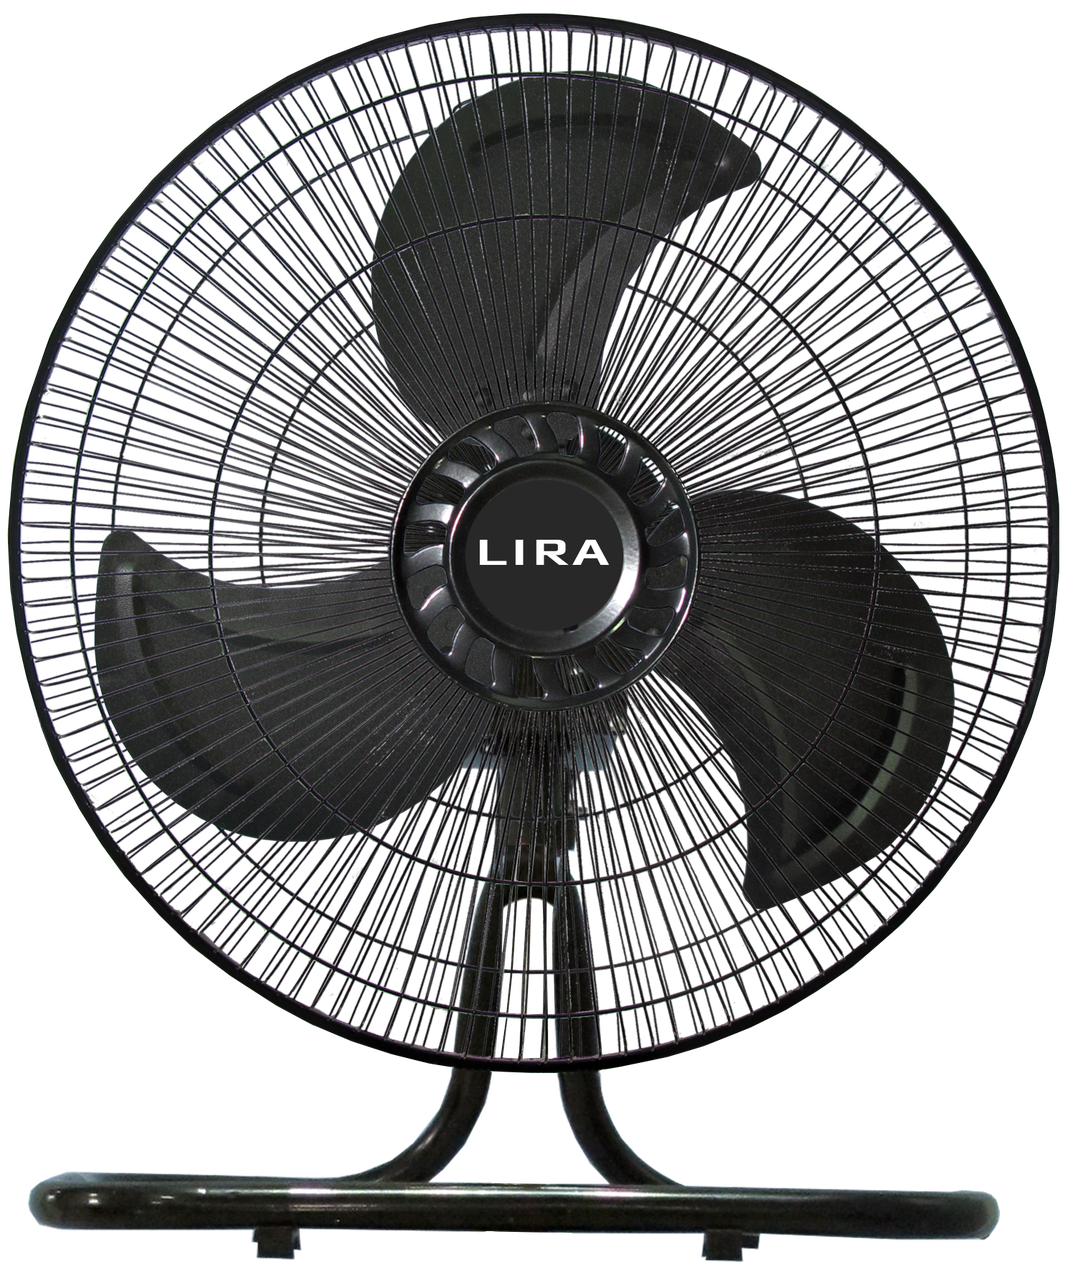 Вентилятор настольный  LIRA LR 1110 (125 Вт) трансформер  3в1 (напольный, настенный)